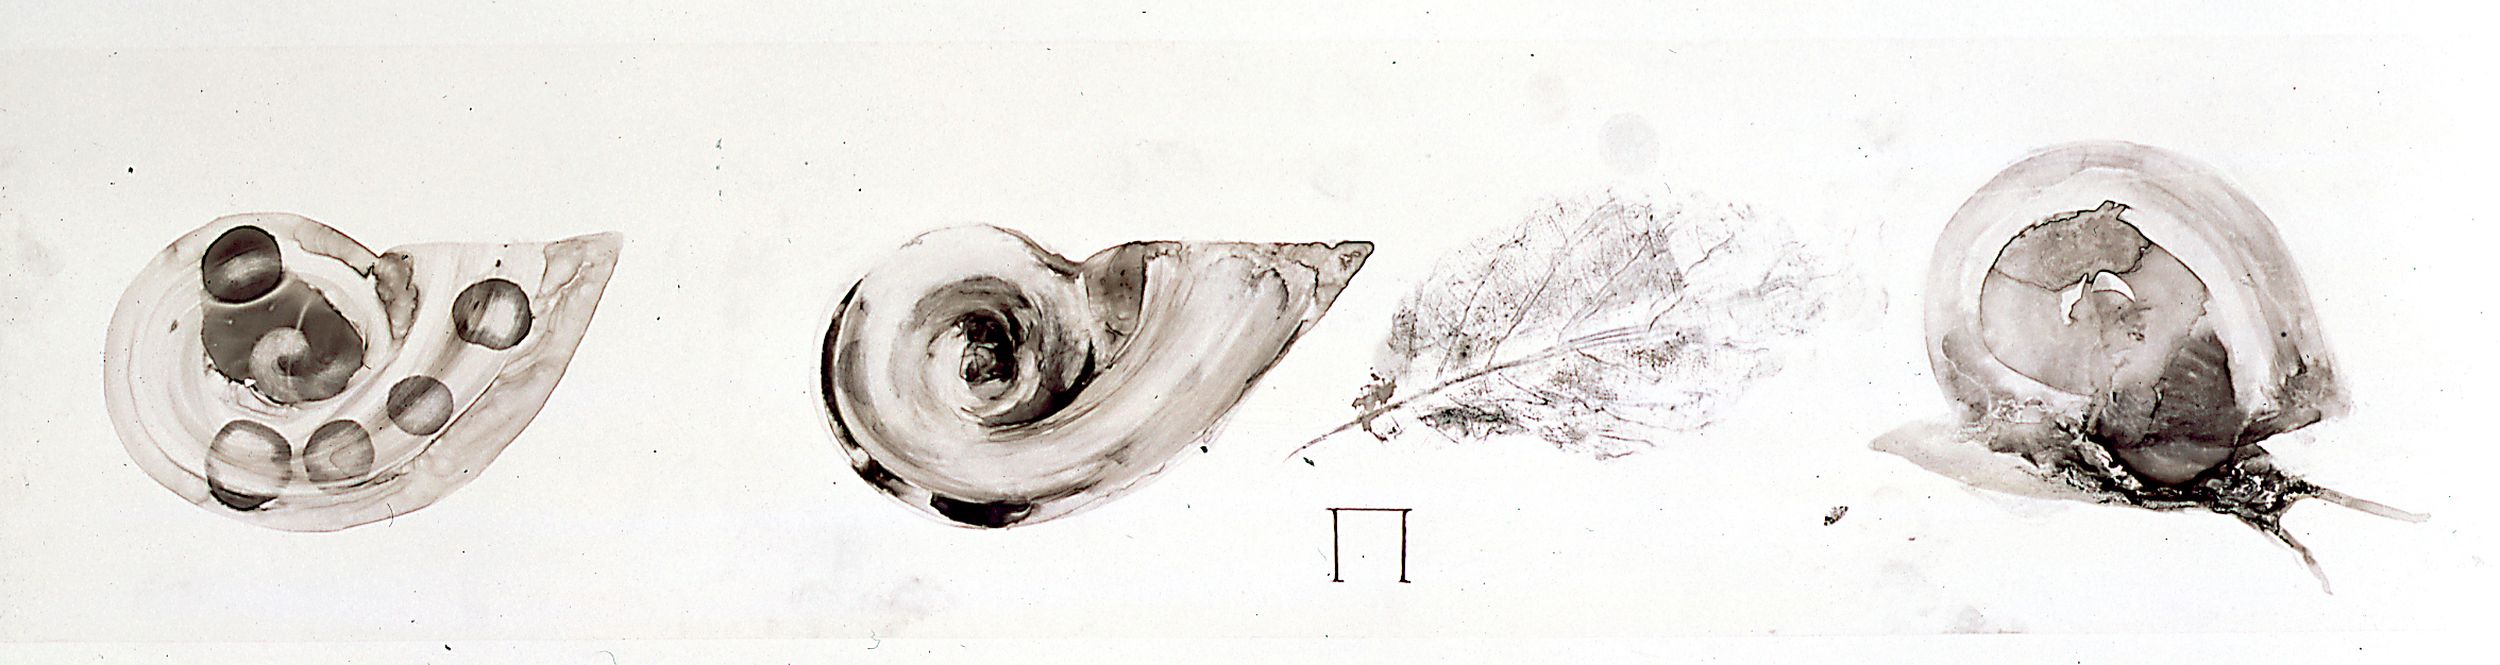 Muschel und Blatt, 2000, 20 x 91 cm, Tusche auf Transparentfolie